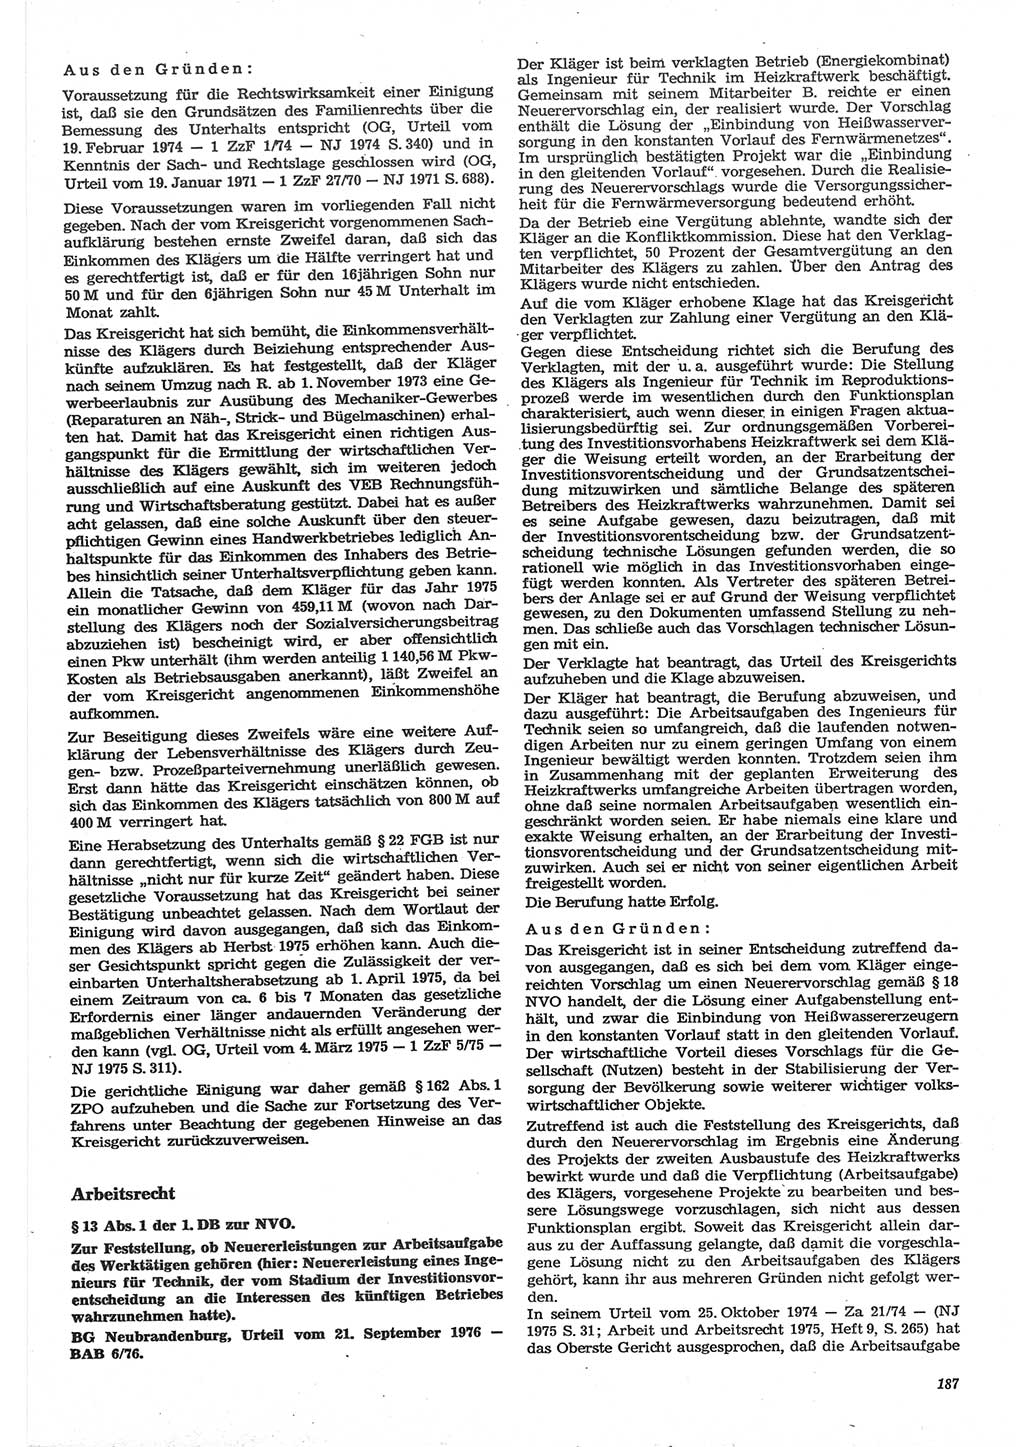 Neue Justiz (NJ), Zeitschrift für Recht und Rechtswissenschaft-Zeitschrift, sozialistisches Recht und Gesetzlichkeit, 31. Jahrgang 1977, Seite 187 (NJ DDR 1977, S. 187)